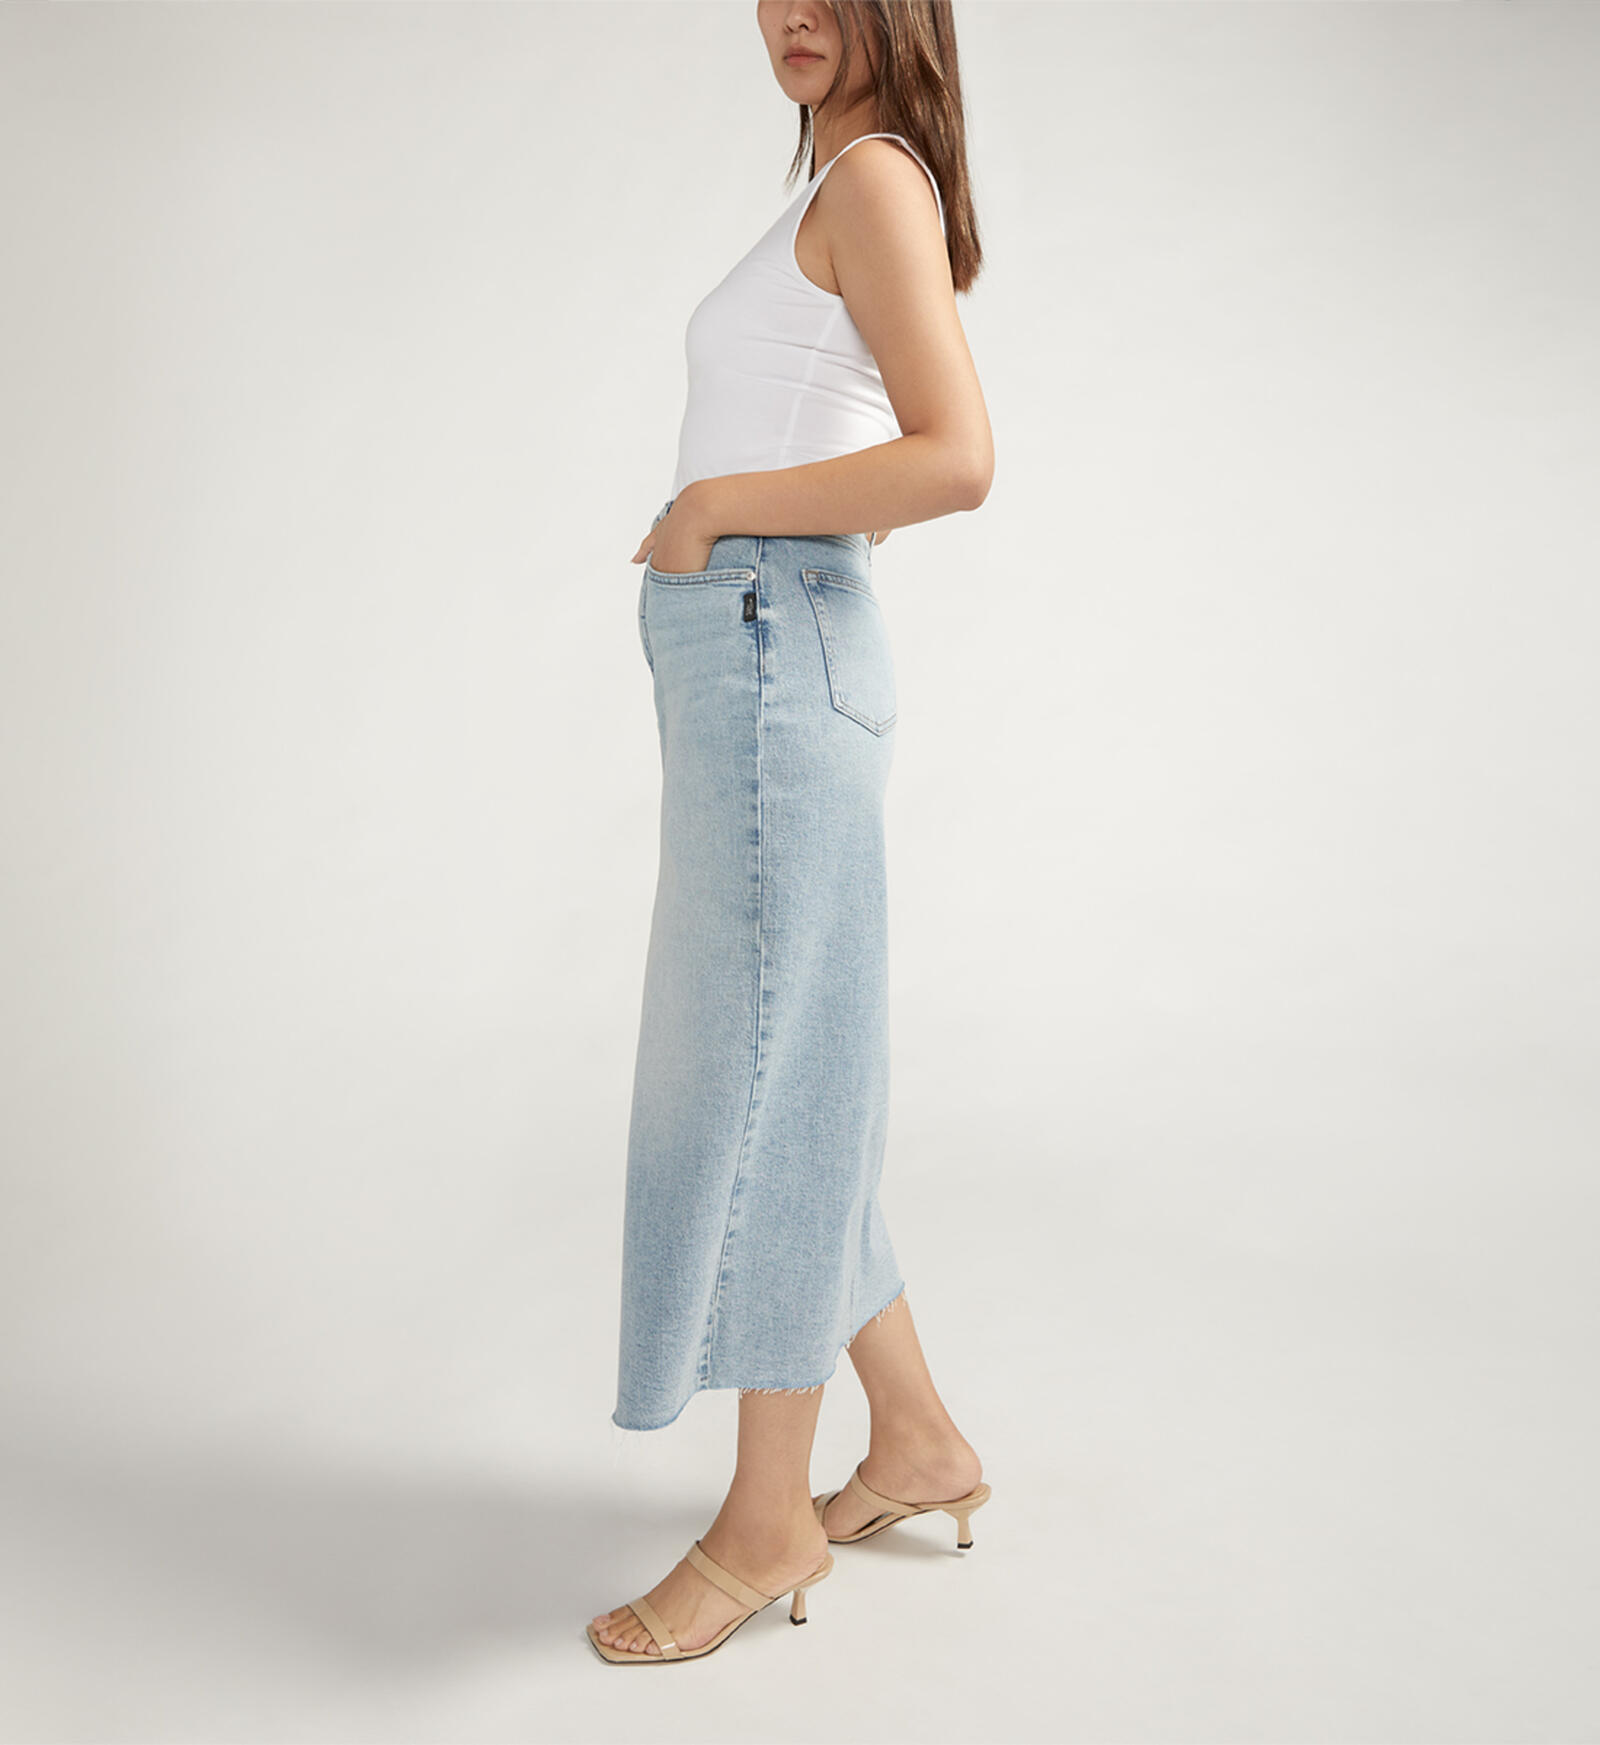  utcoco Women's Midi Jean Skirt High Waisted Slit Hem